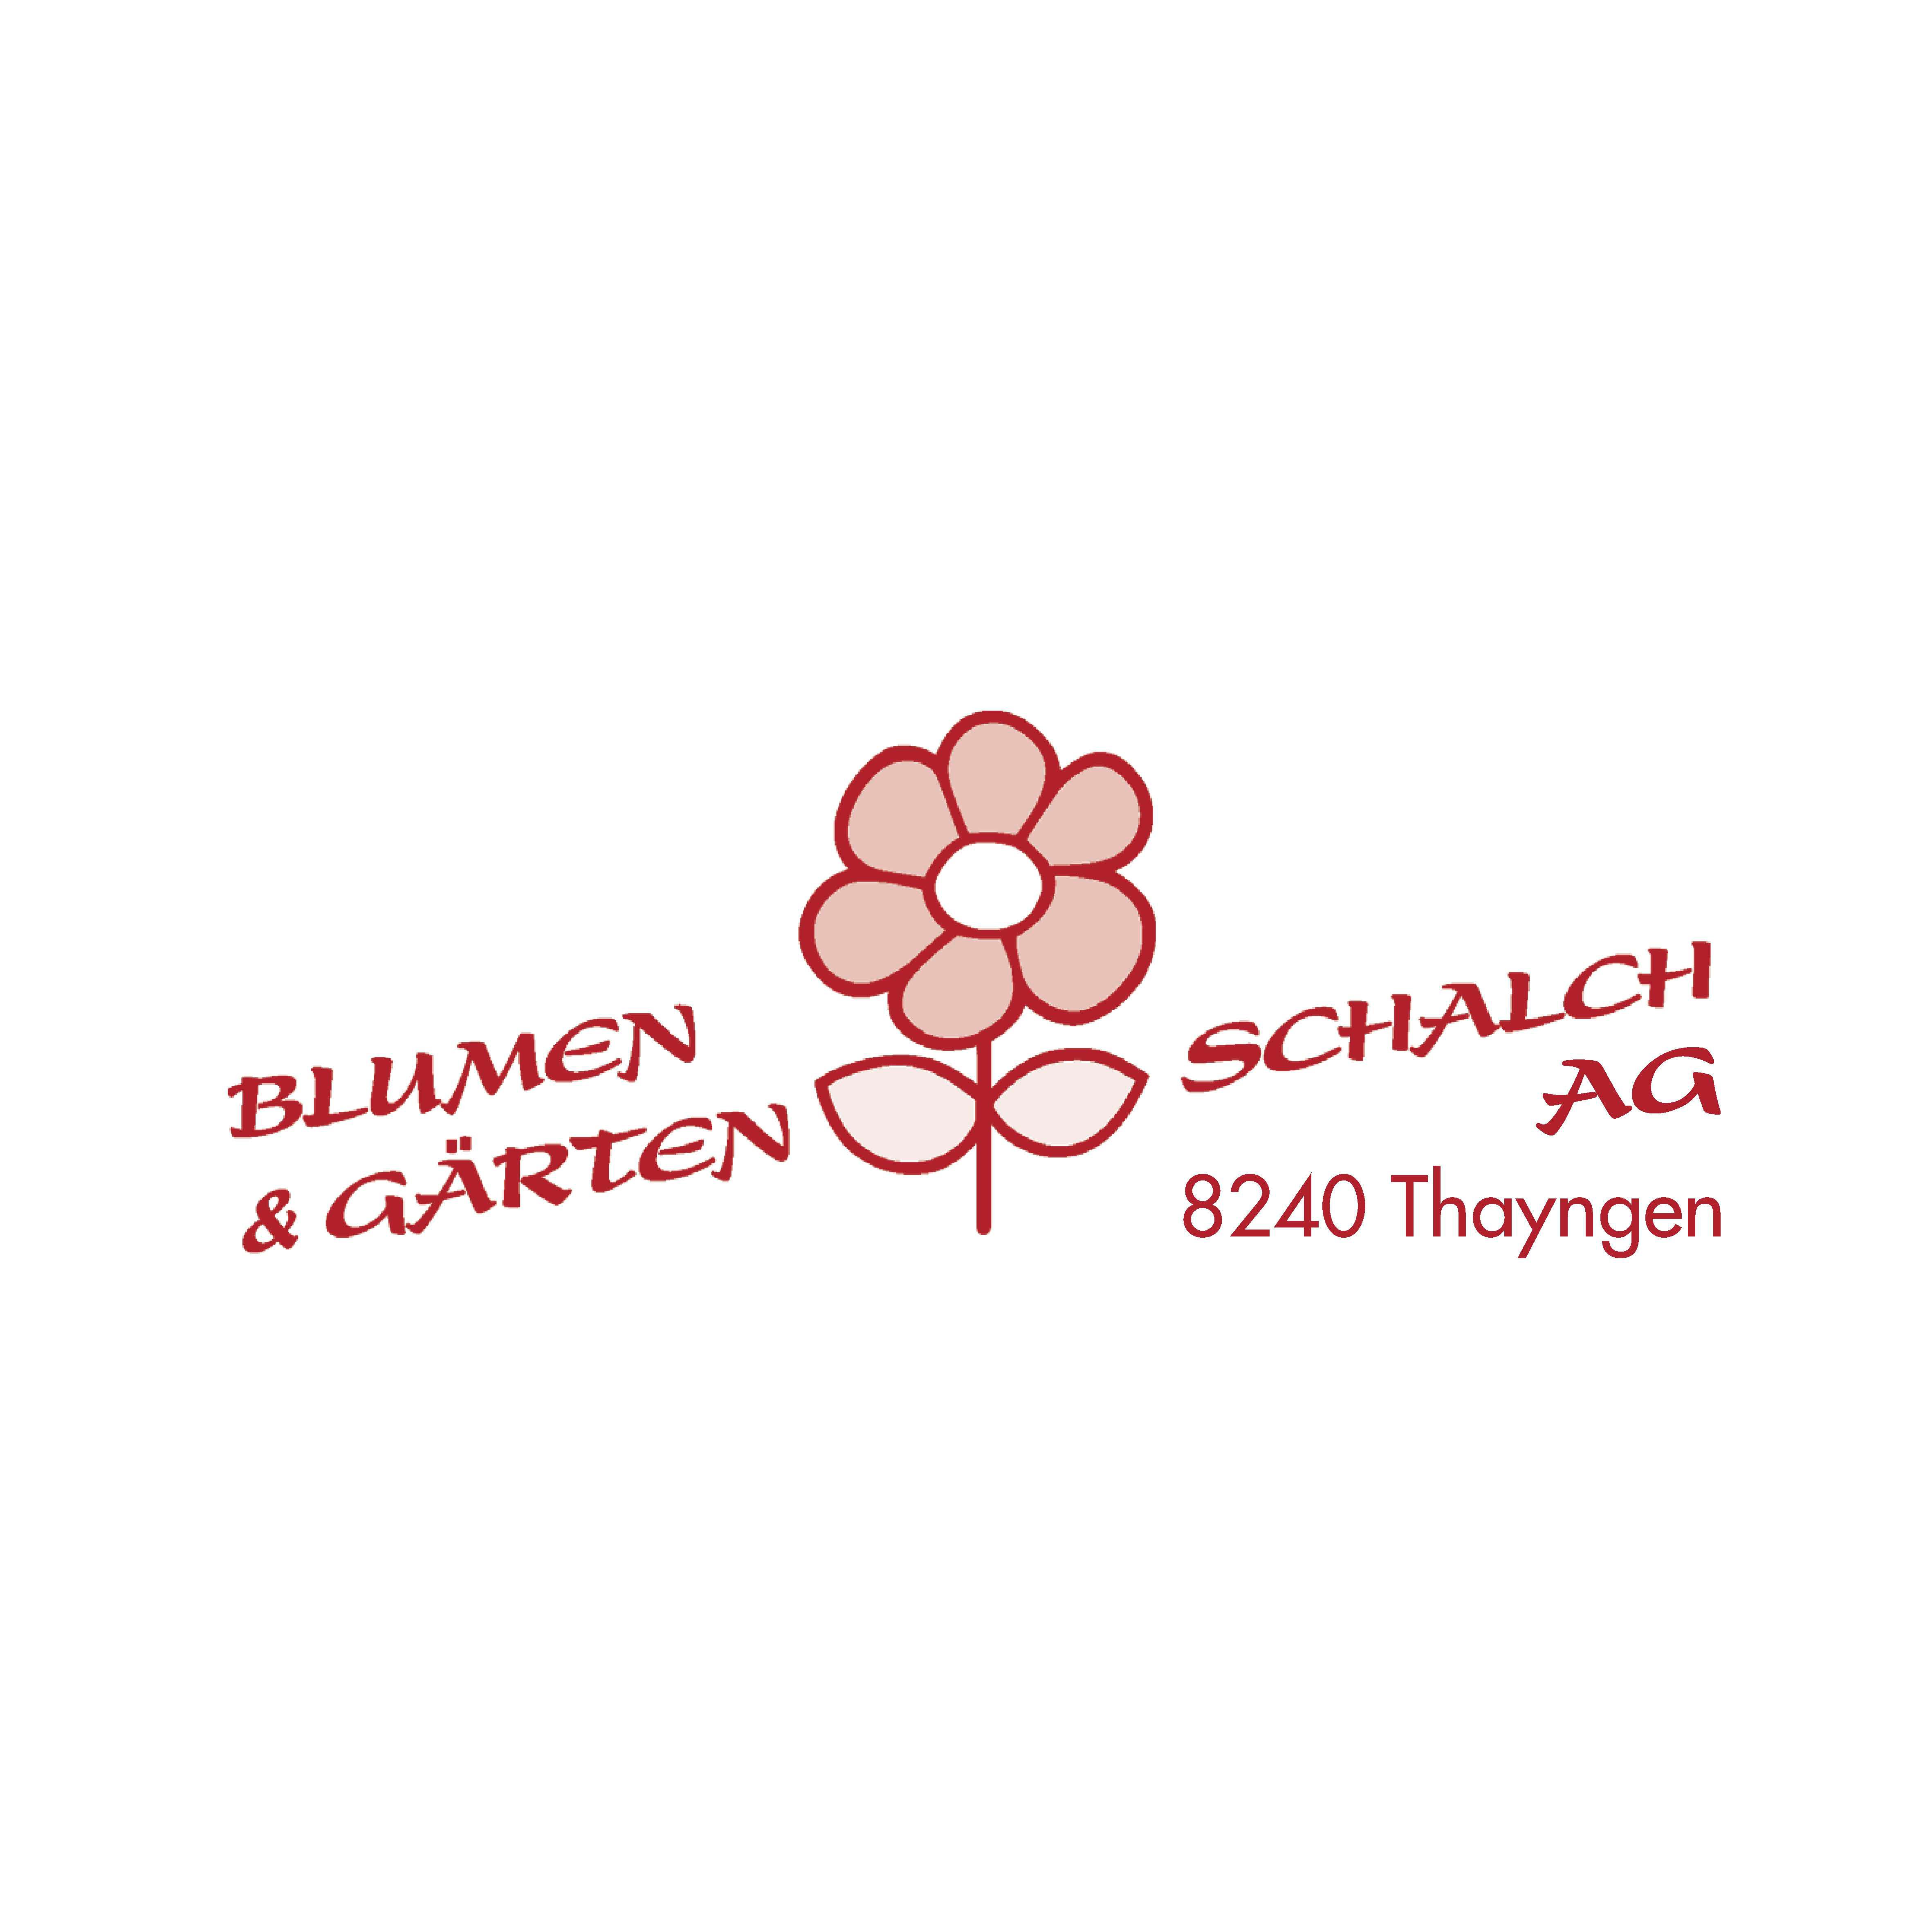 Blumen & Gärten Schalch AG Logo